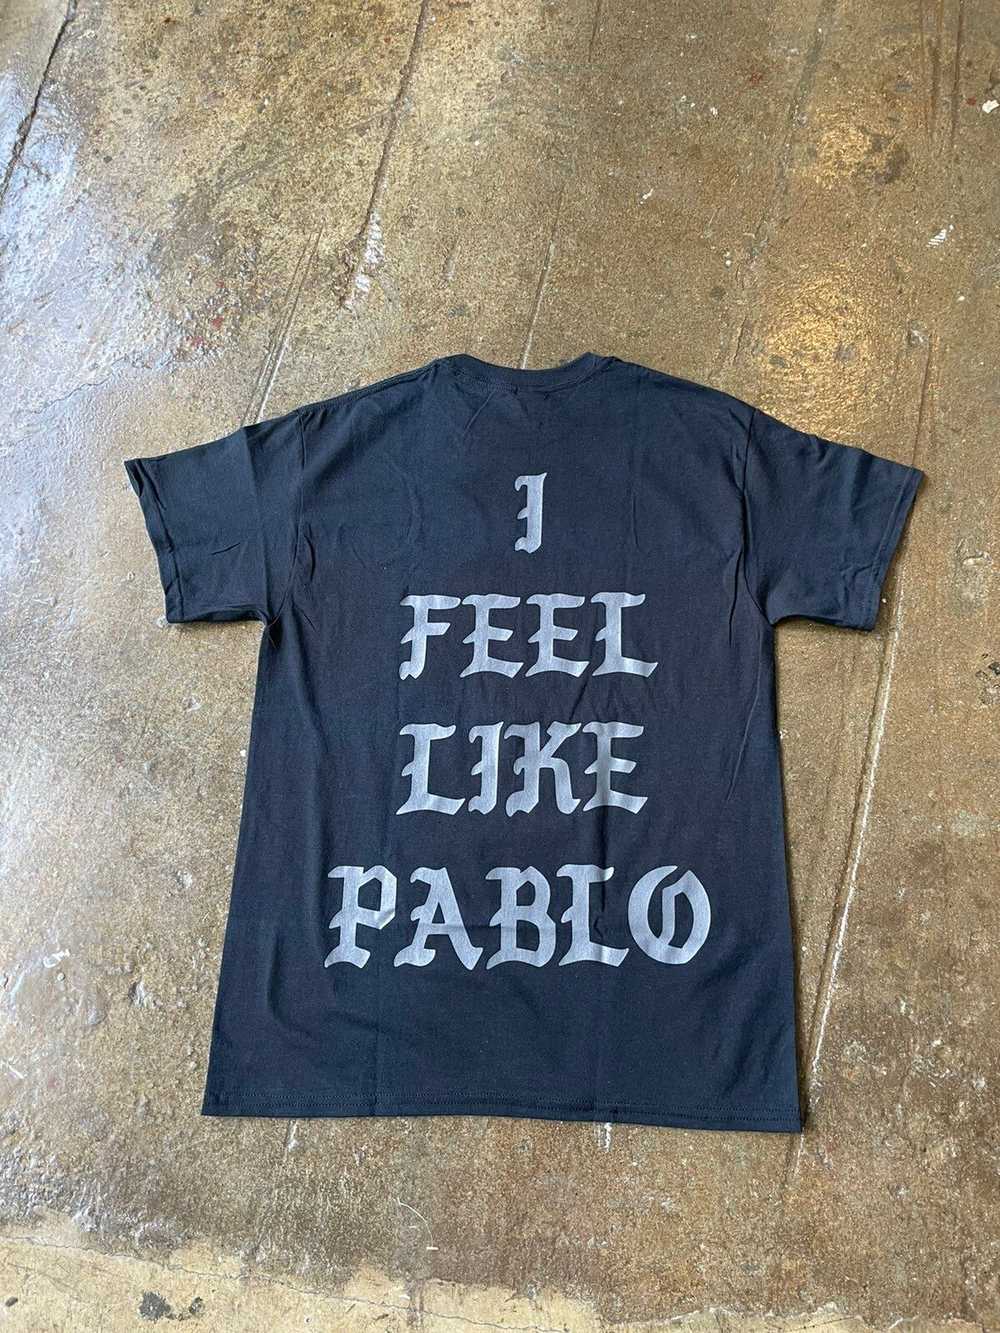 Kanye West Kanye West I feel Like Pablo TLOP Chic… - image 1